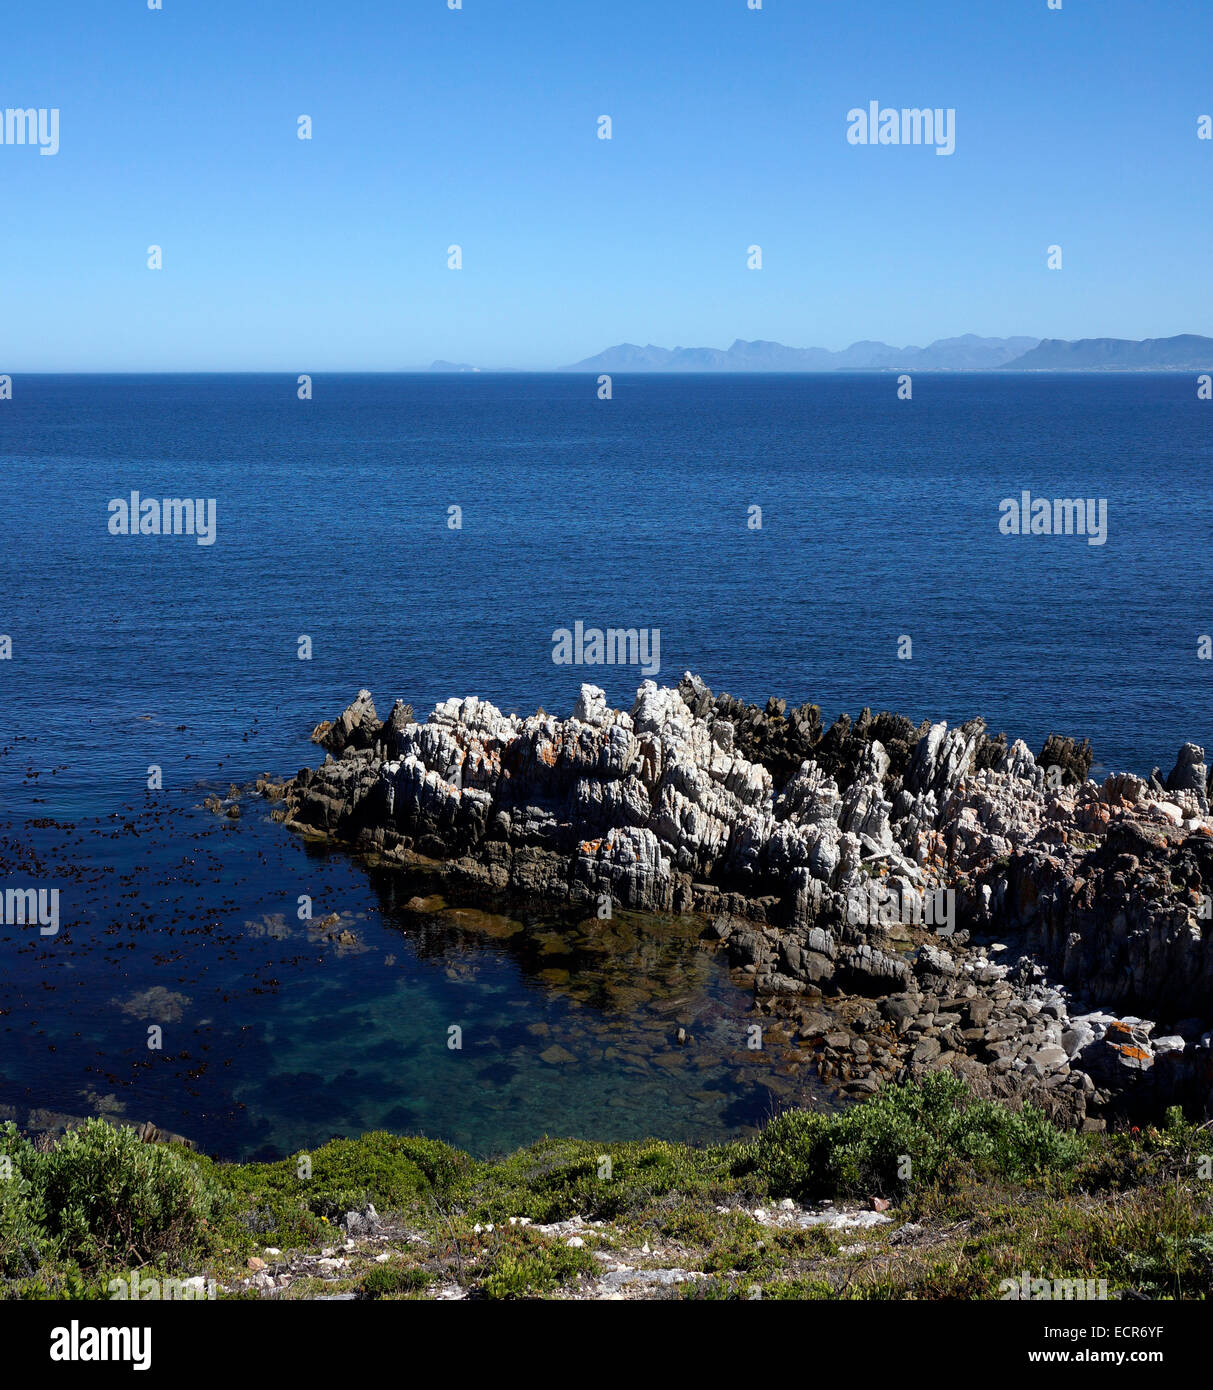 De Kelders sulla costa meridionale della provincia del Capo occidentale del Sud Africa è un posto popolare per fare whale watching. Foto Stock